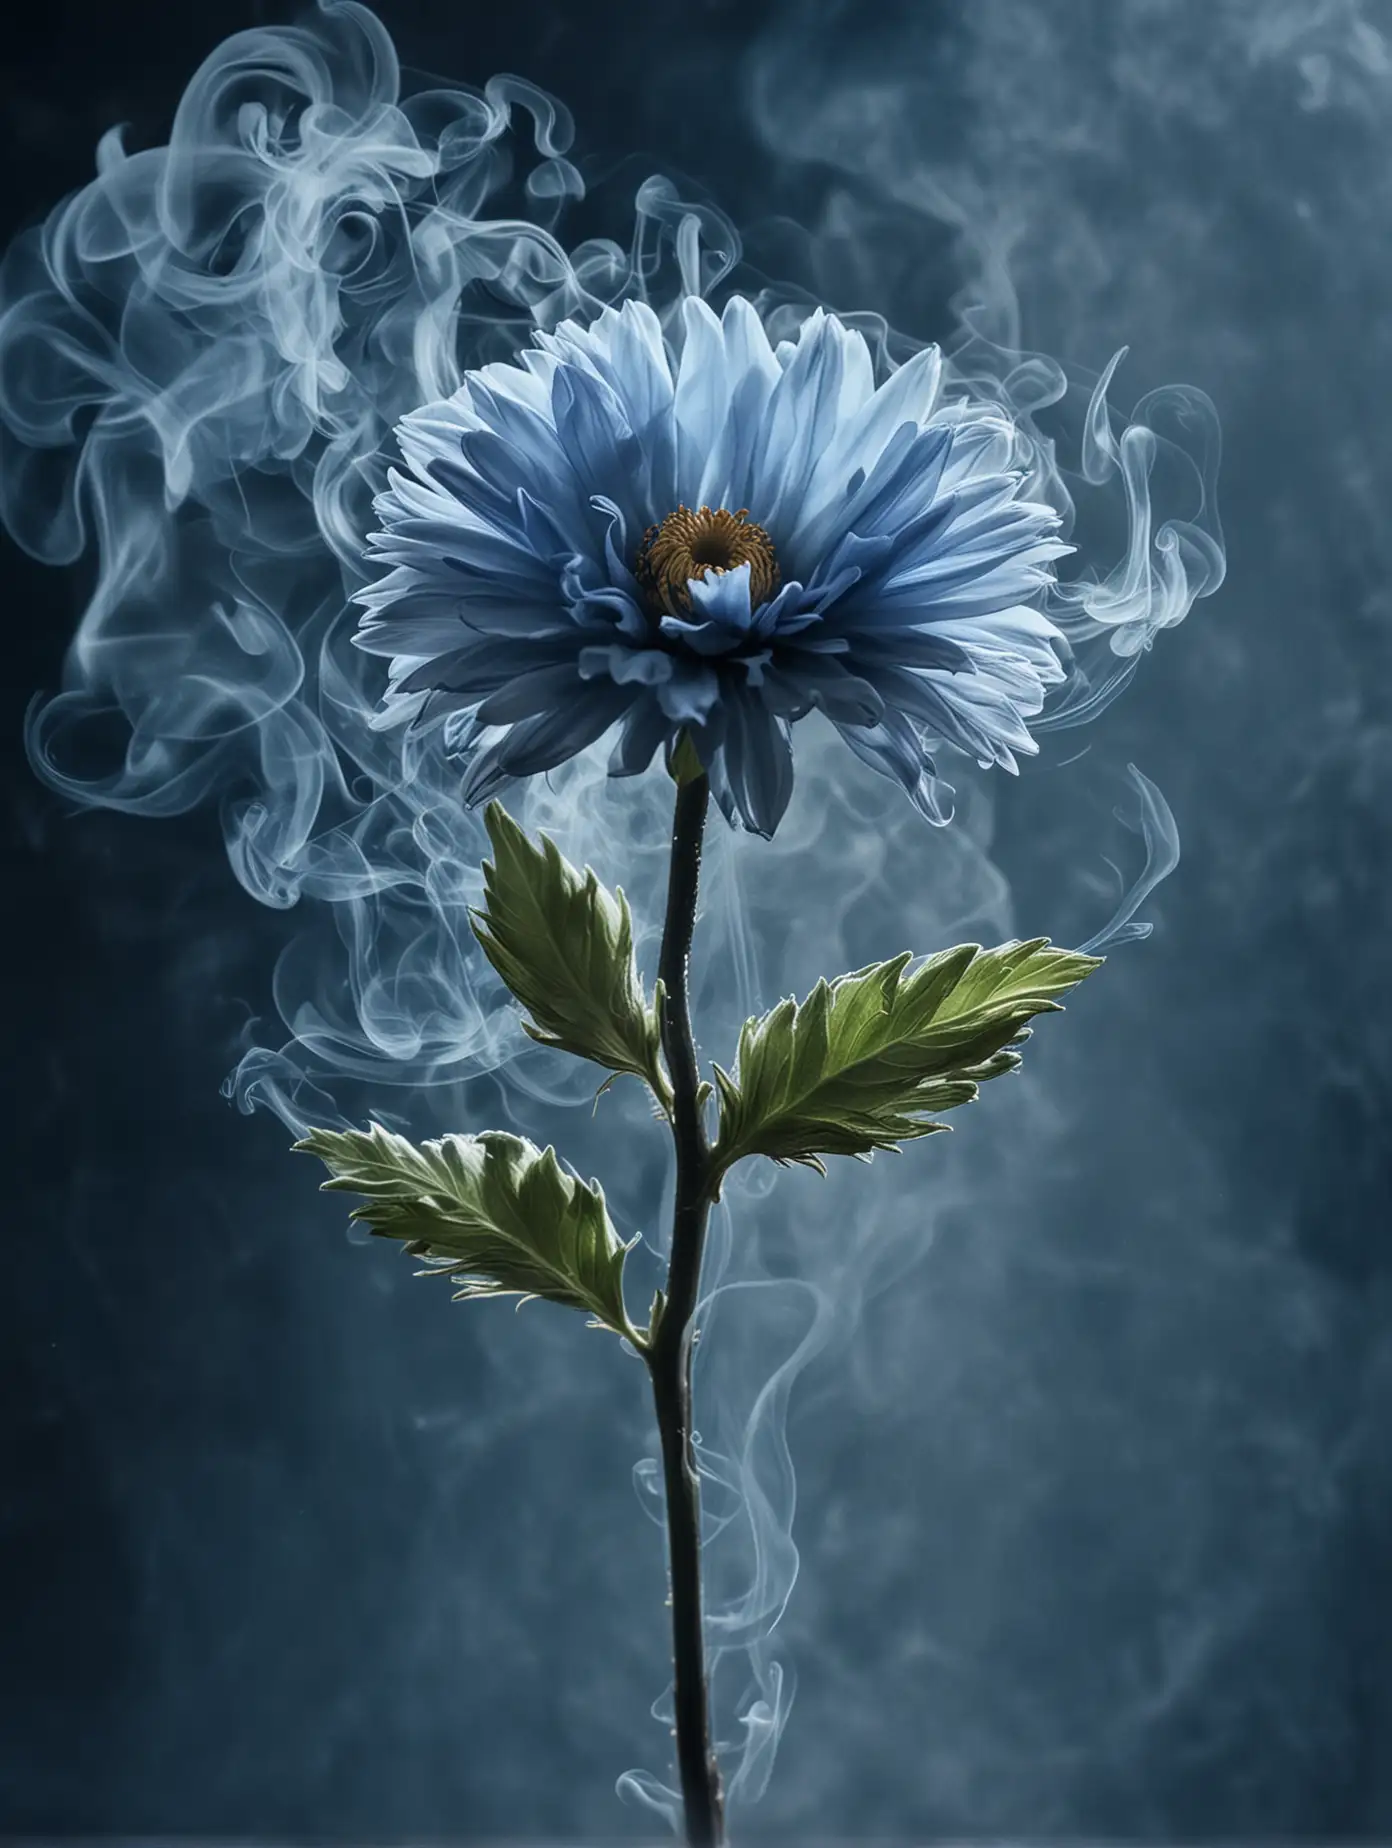 A flower in blue smoke